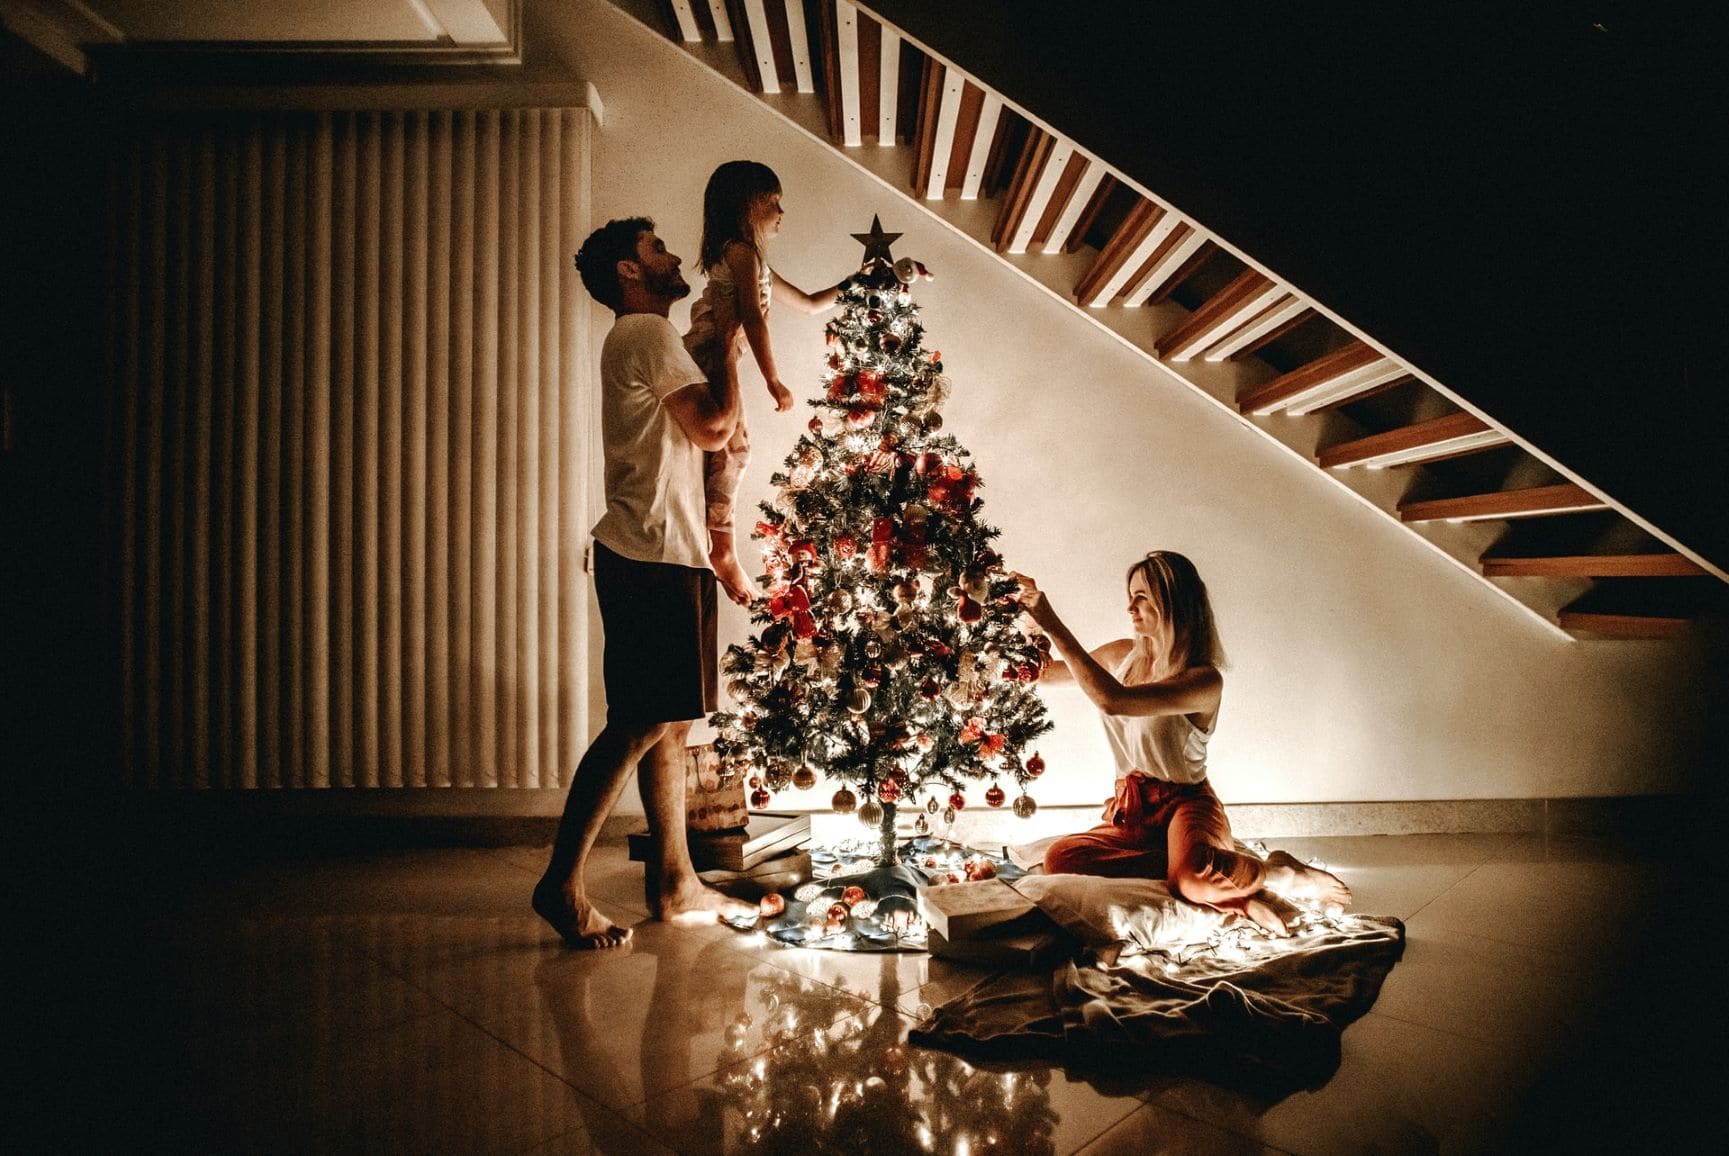 Mann, Frau und Kind schmücken Weihnachtsbaum unter Treppe